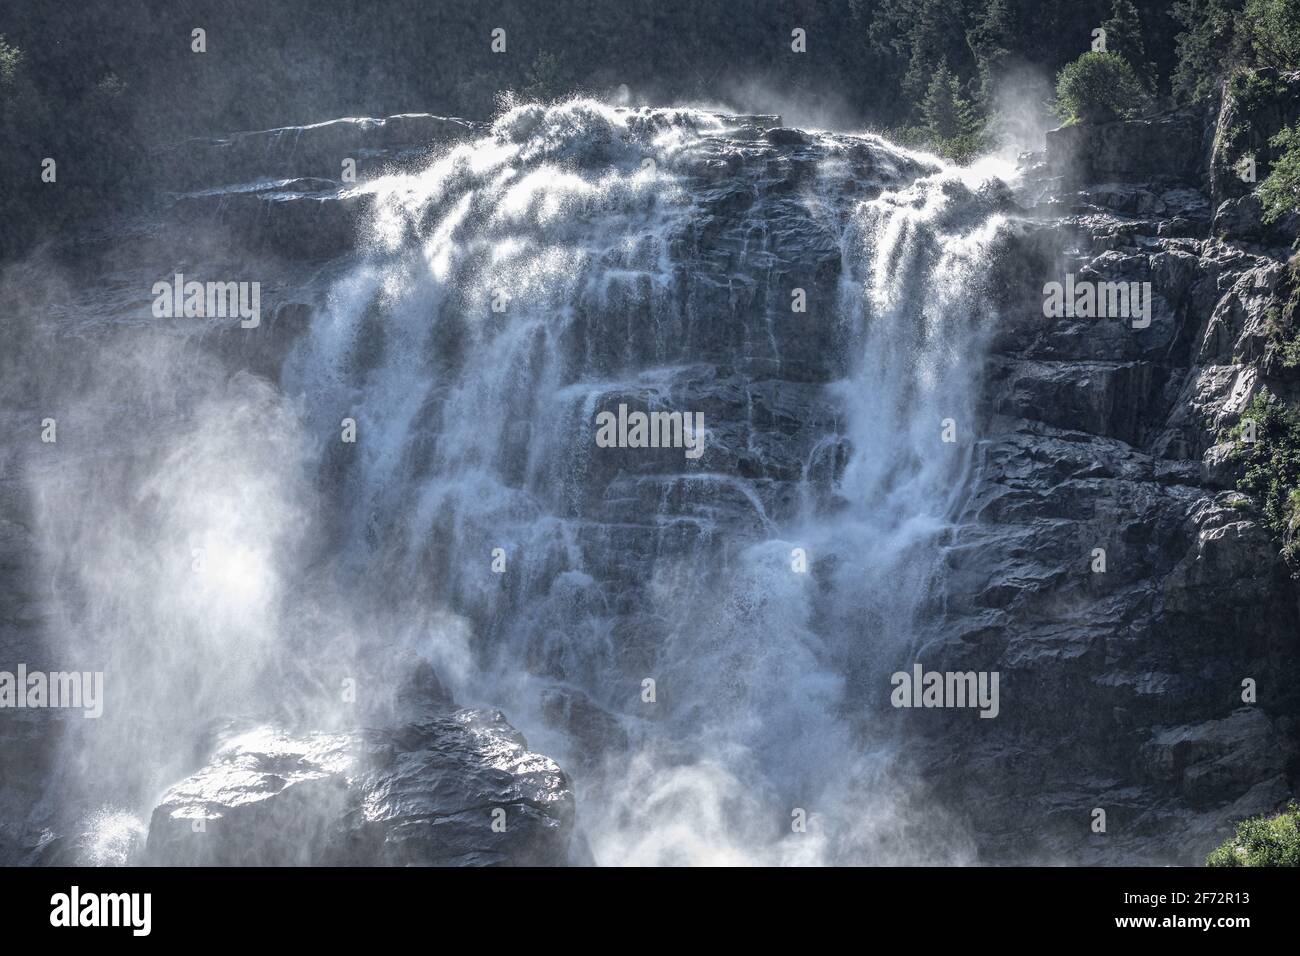 Cascata di Gawa in Tirolo Stubaital, Austria. La cascata di Gawa ha un'altezza di circa 180 m ed è alimentata dai ghiacciai più potenti della zona. Foto Stock